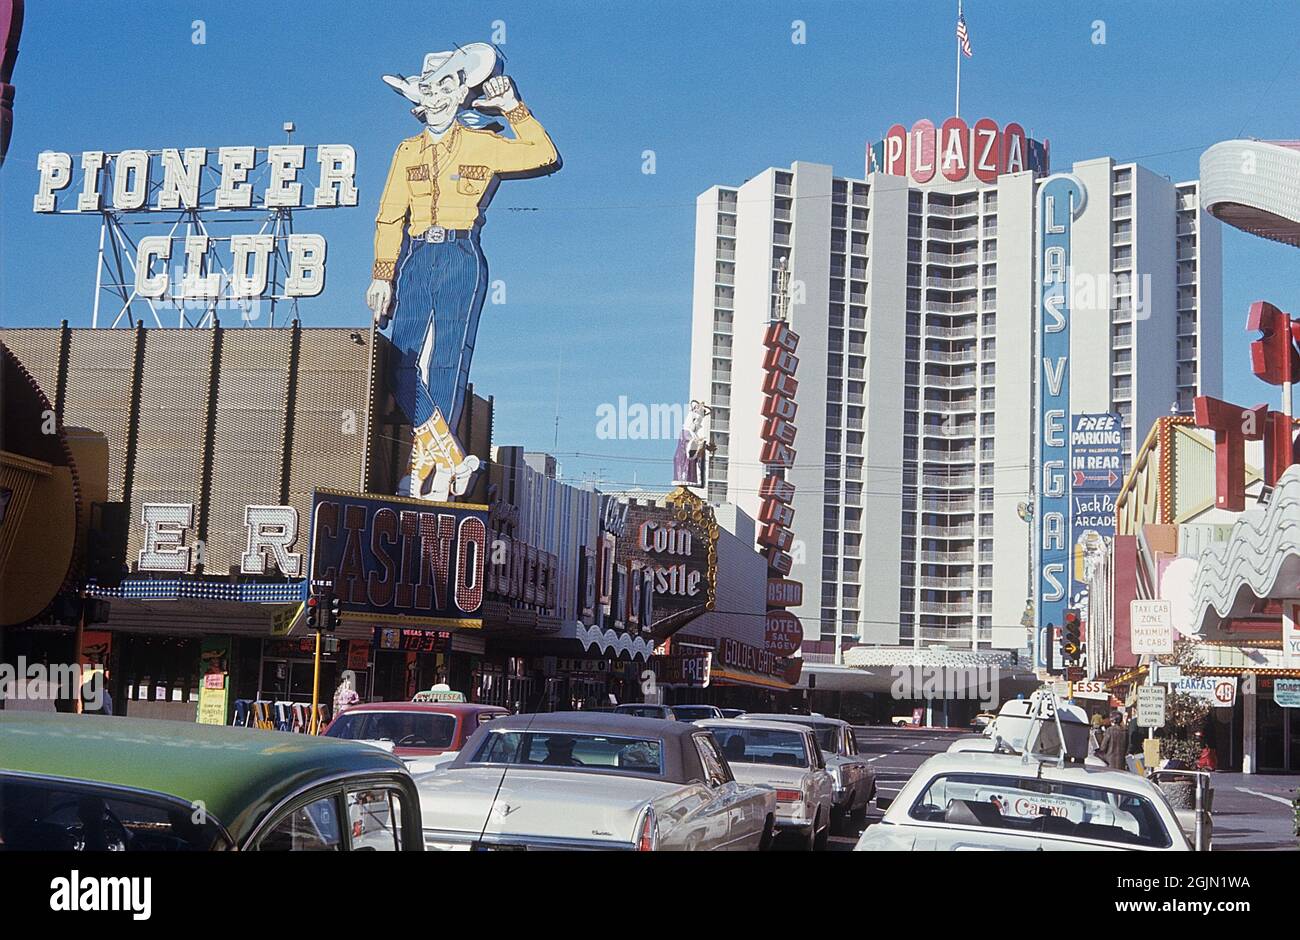 Las Vegas 1959. Downtown Las Vegas mit Pioneer Club auf der linken Seite, Coin Castle, Golden Gate Casino. Im Hintergrund das Plaza Hotel. Kodachrome Dia Original. Credit Roland Palm Ref. 6-2-18 Stockfoto